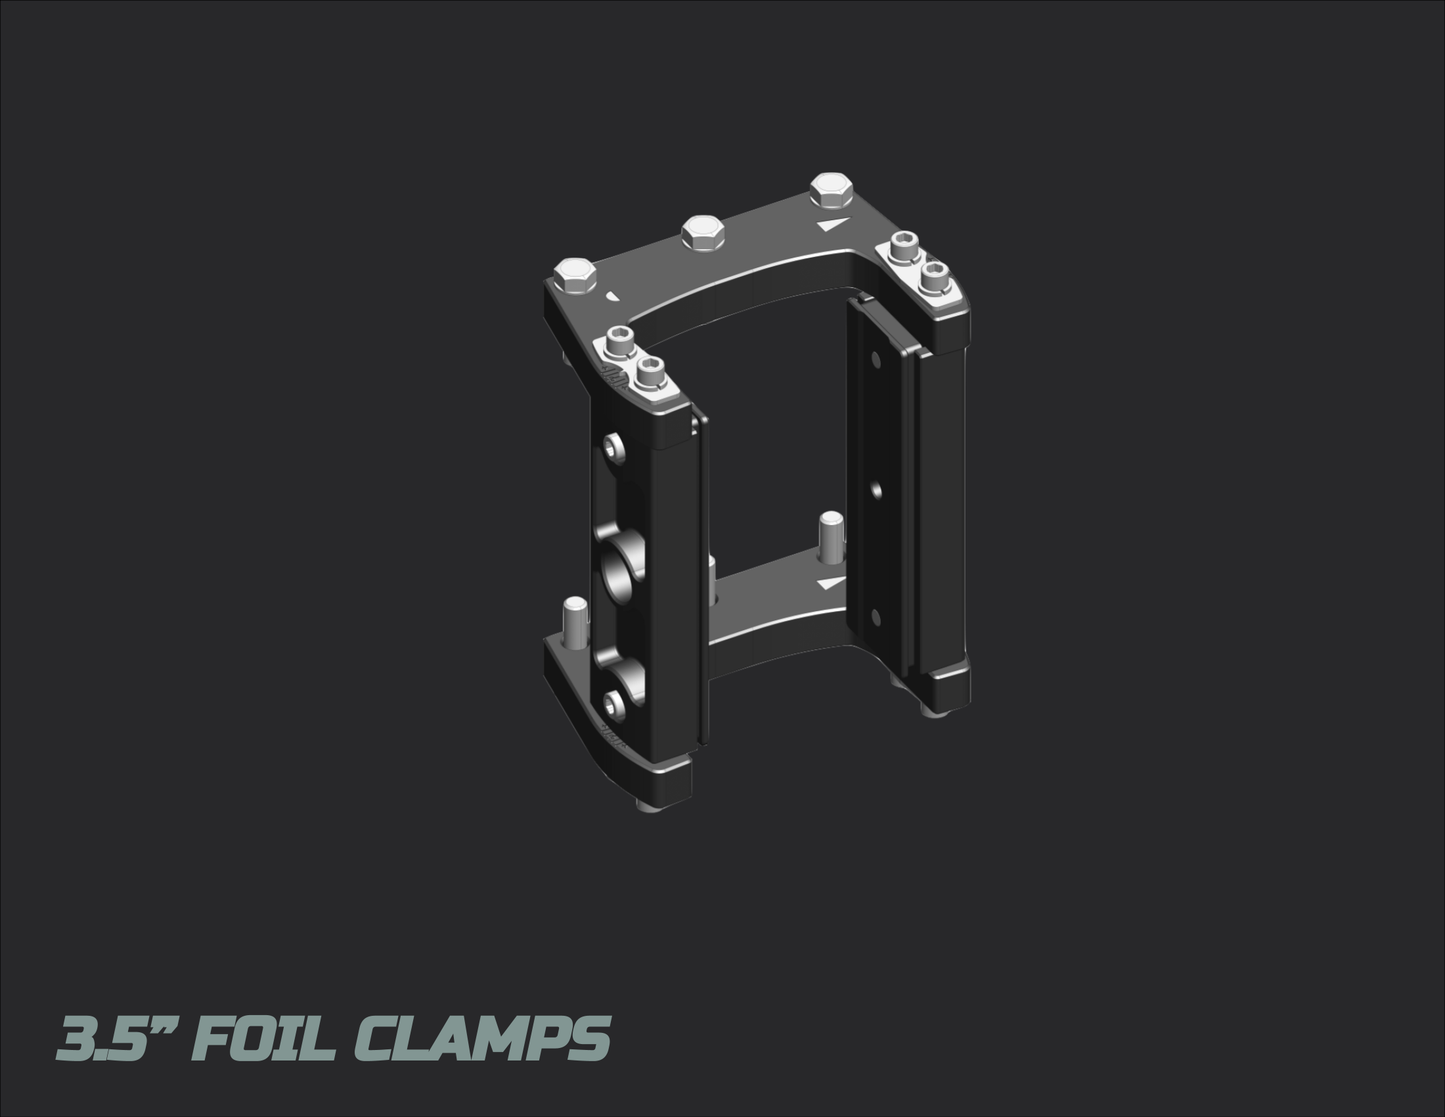 FOIL Z-POLE CLAMPS